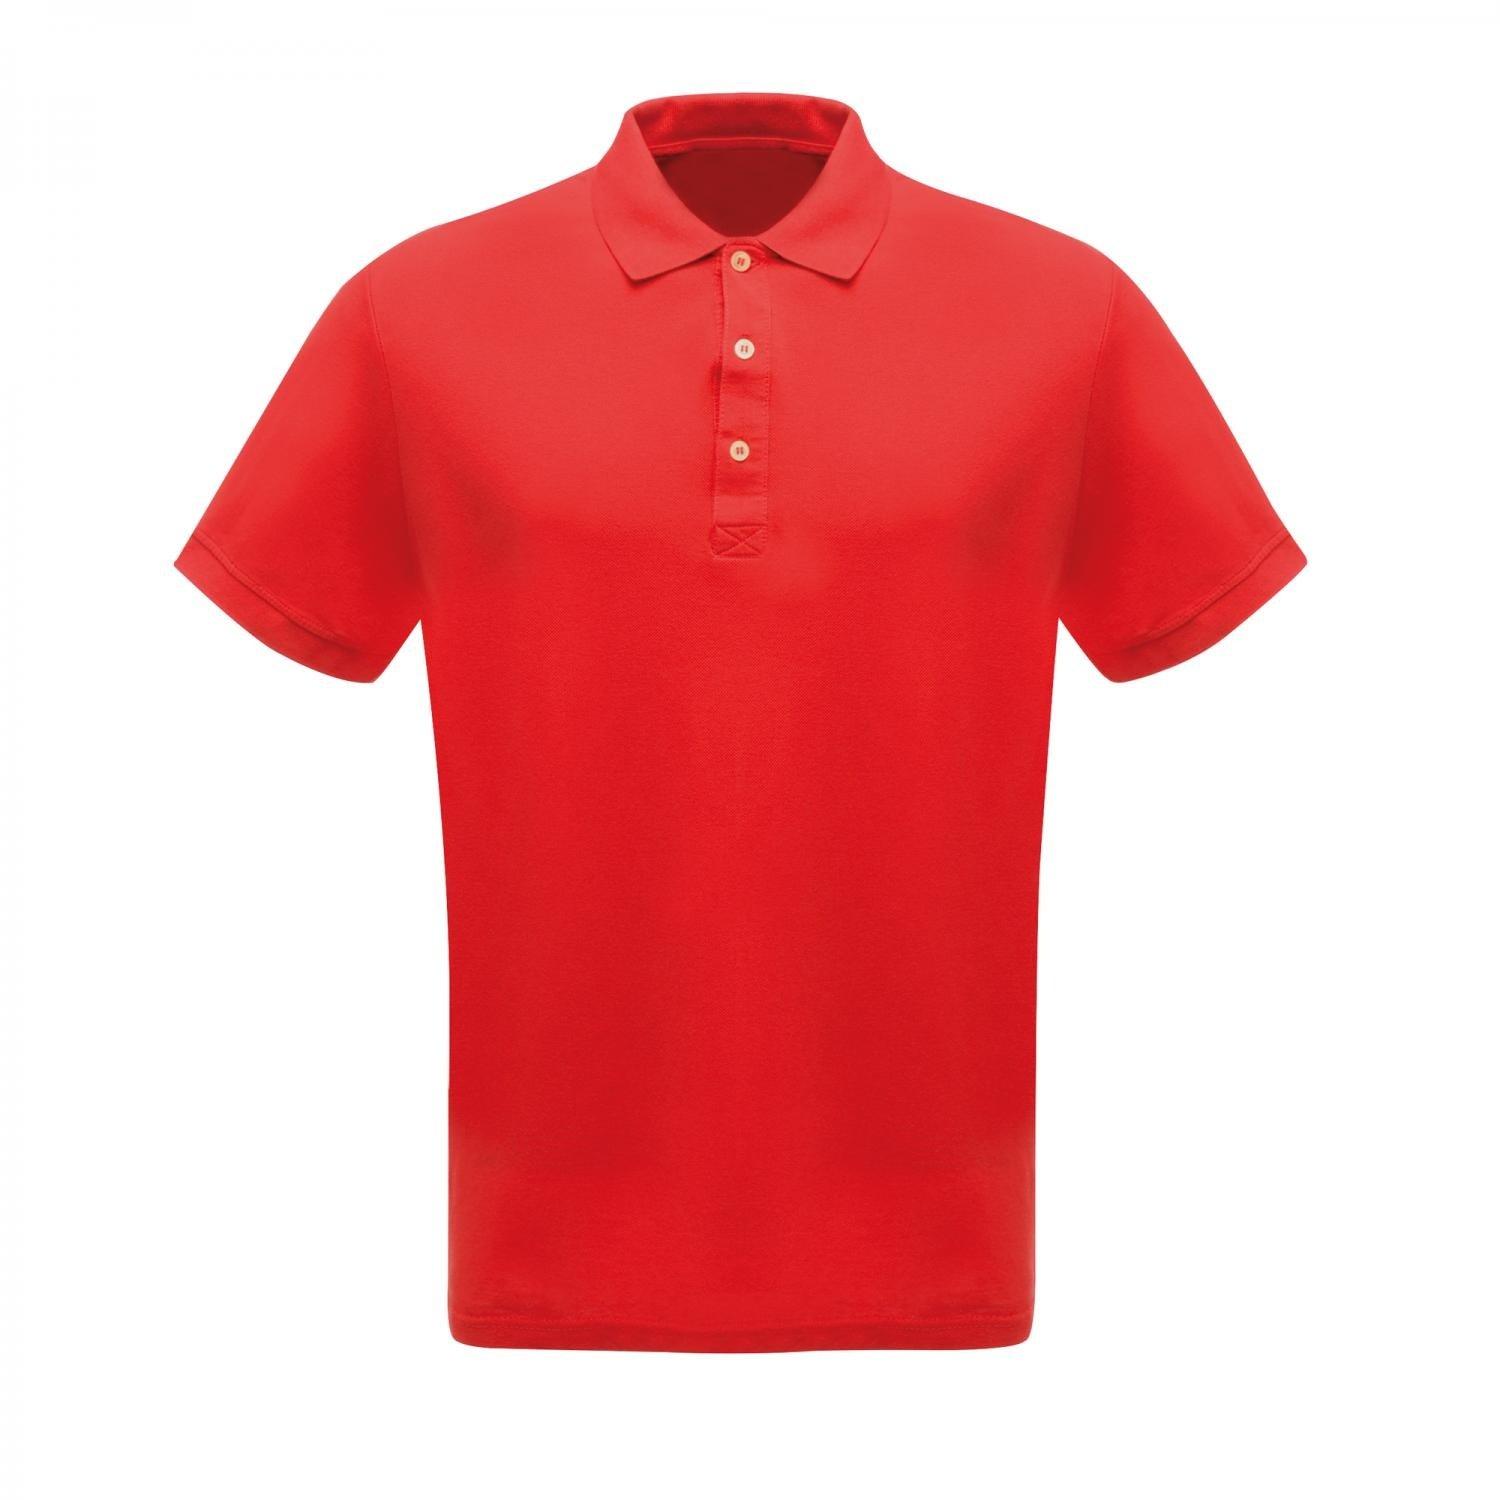 Professionell Klassik Poloshirt Herren Rot Bunt 4XL von Regatta